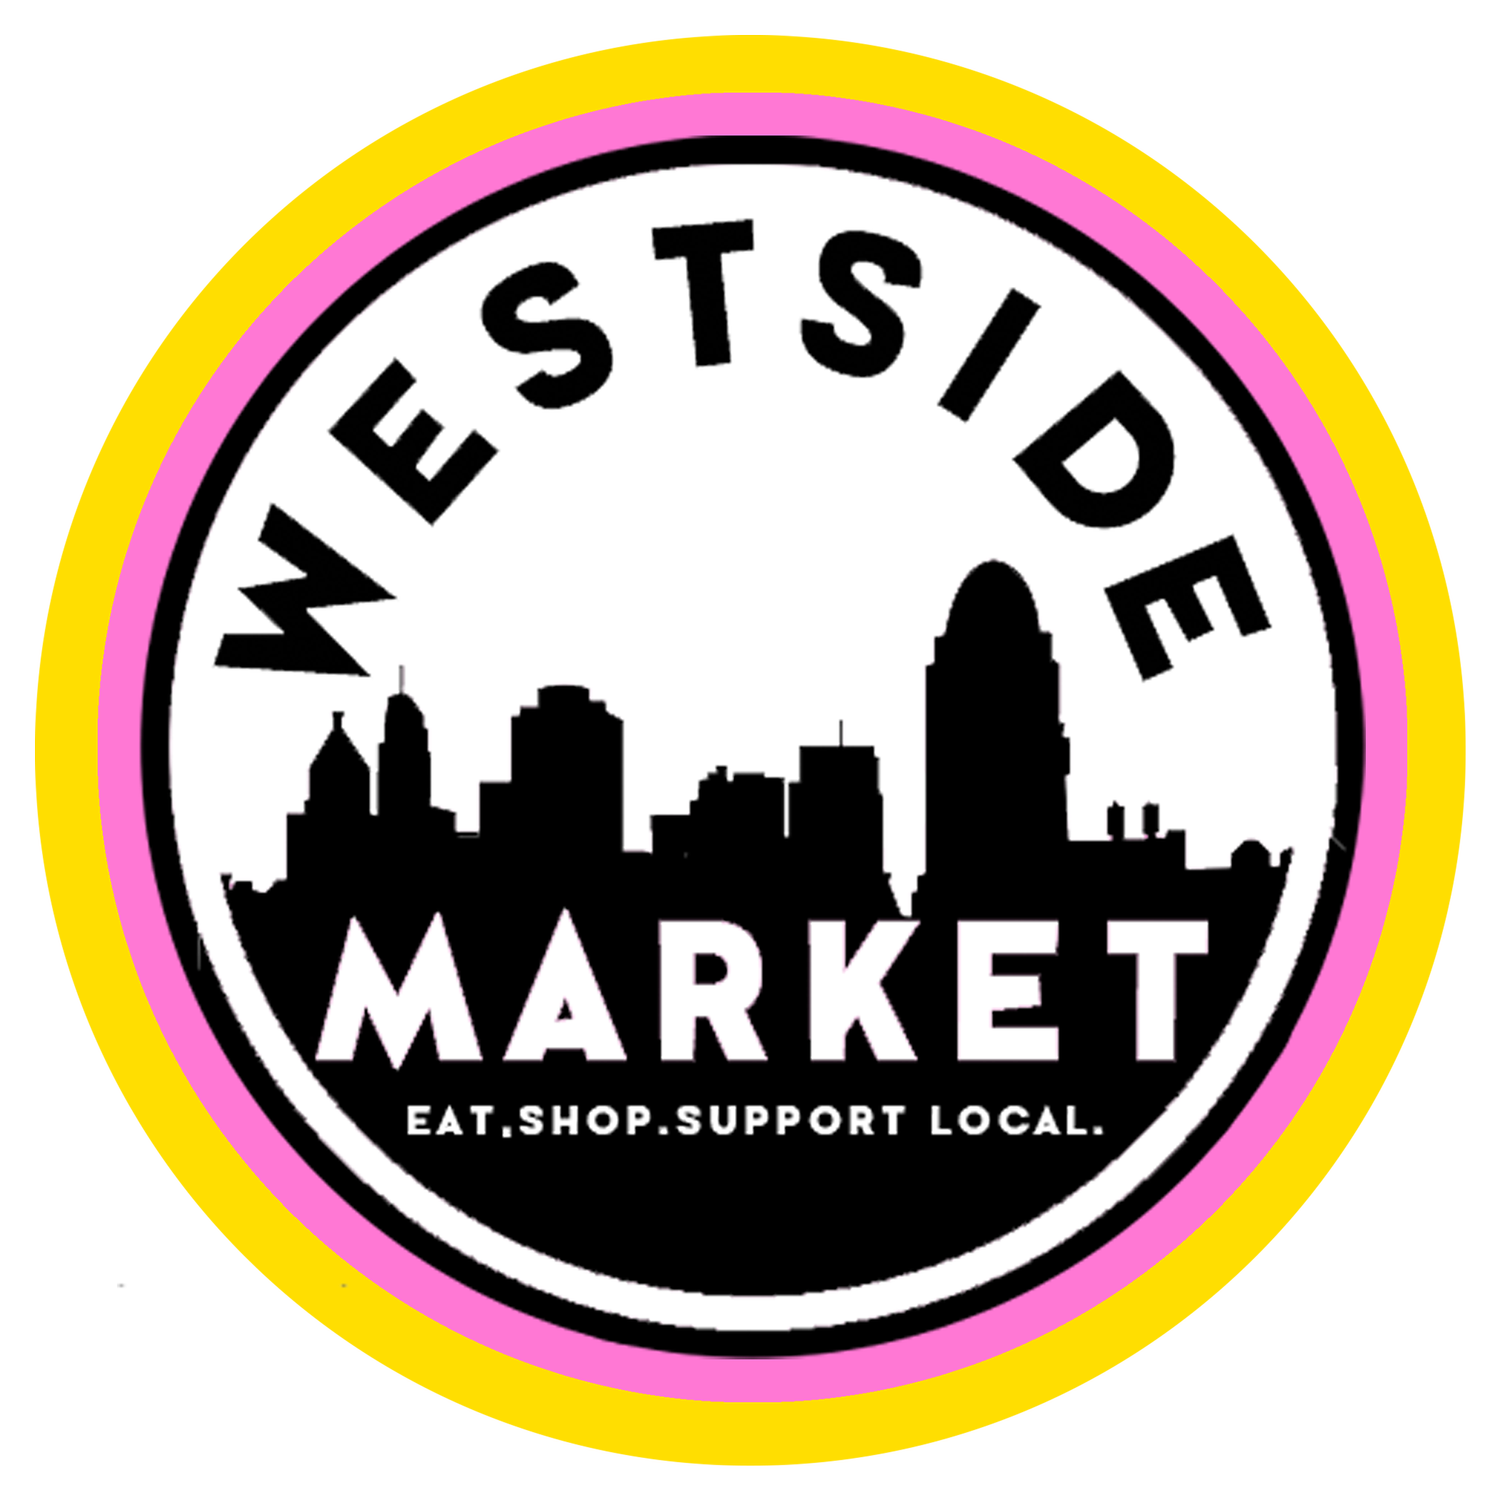 Westside_Market.png